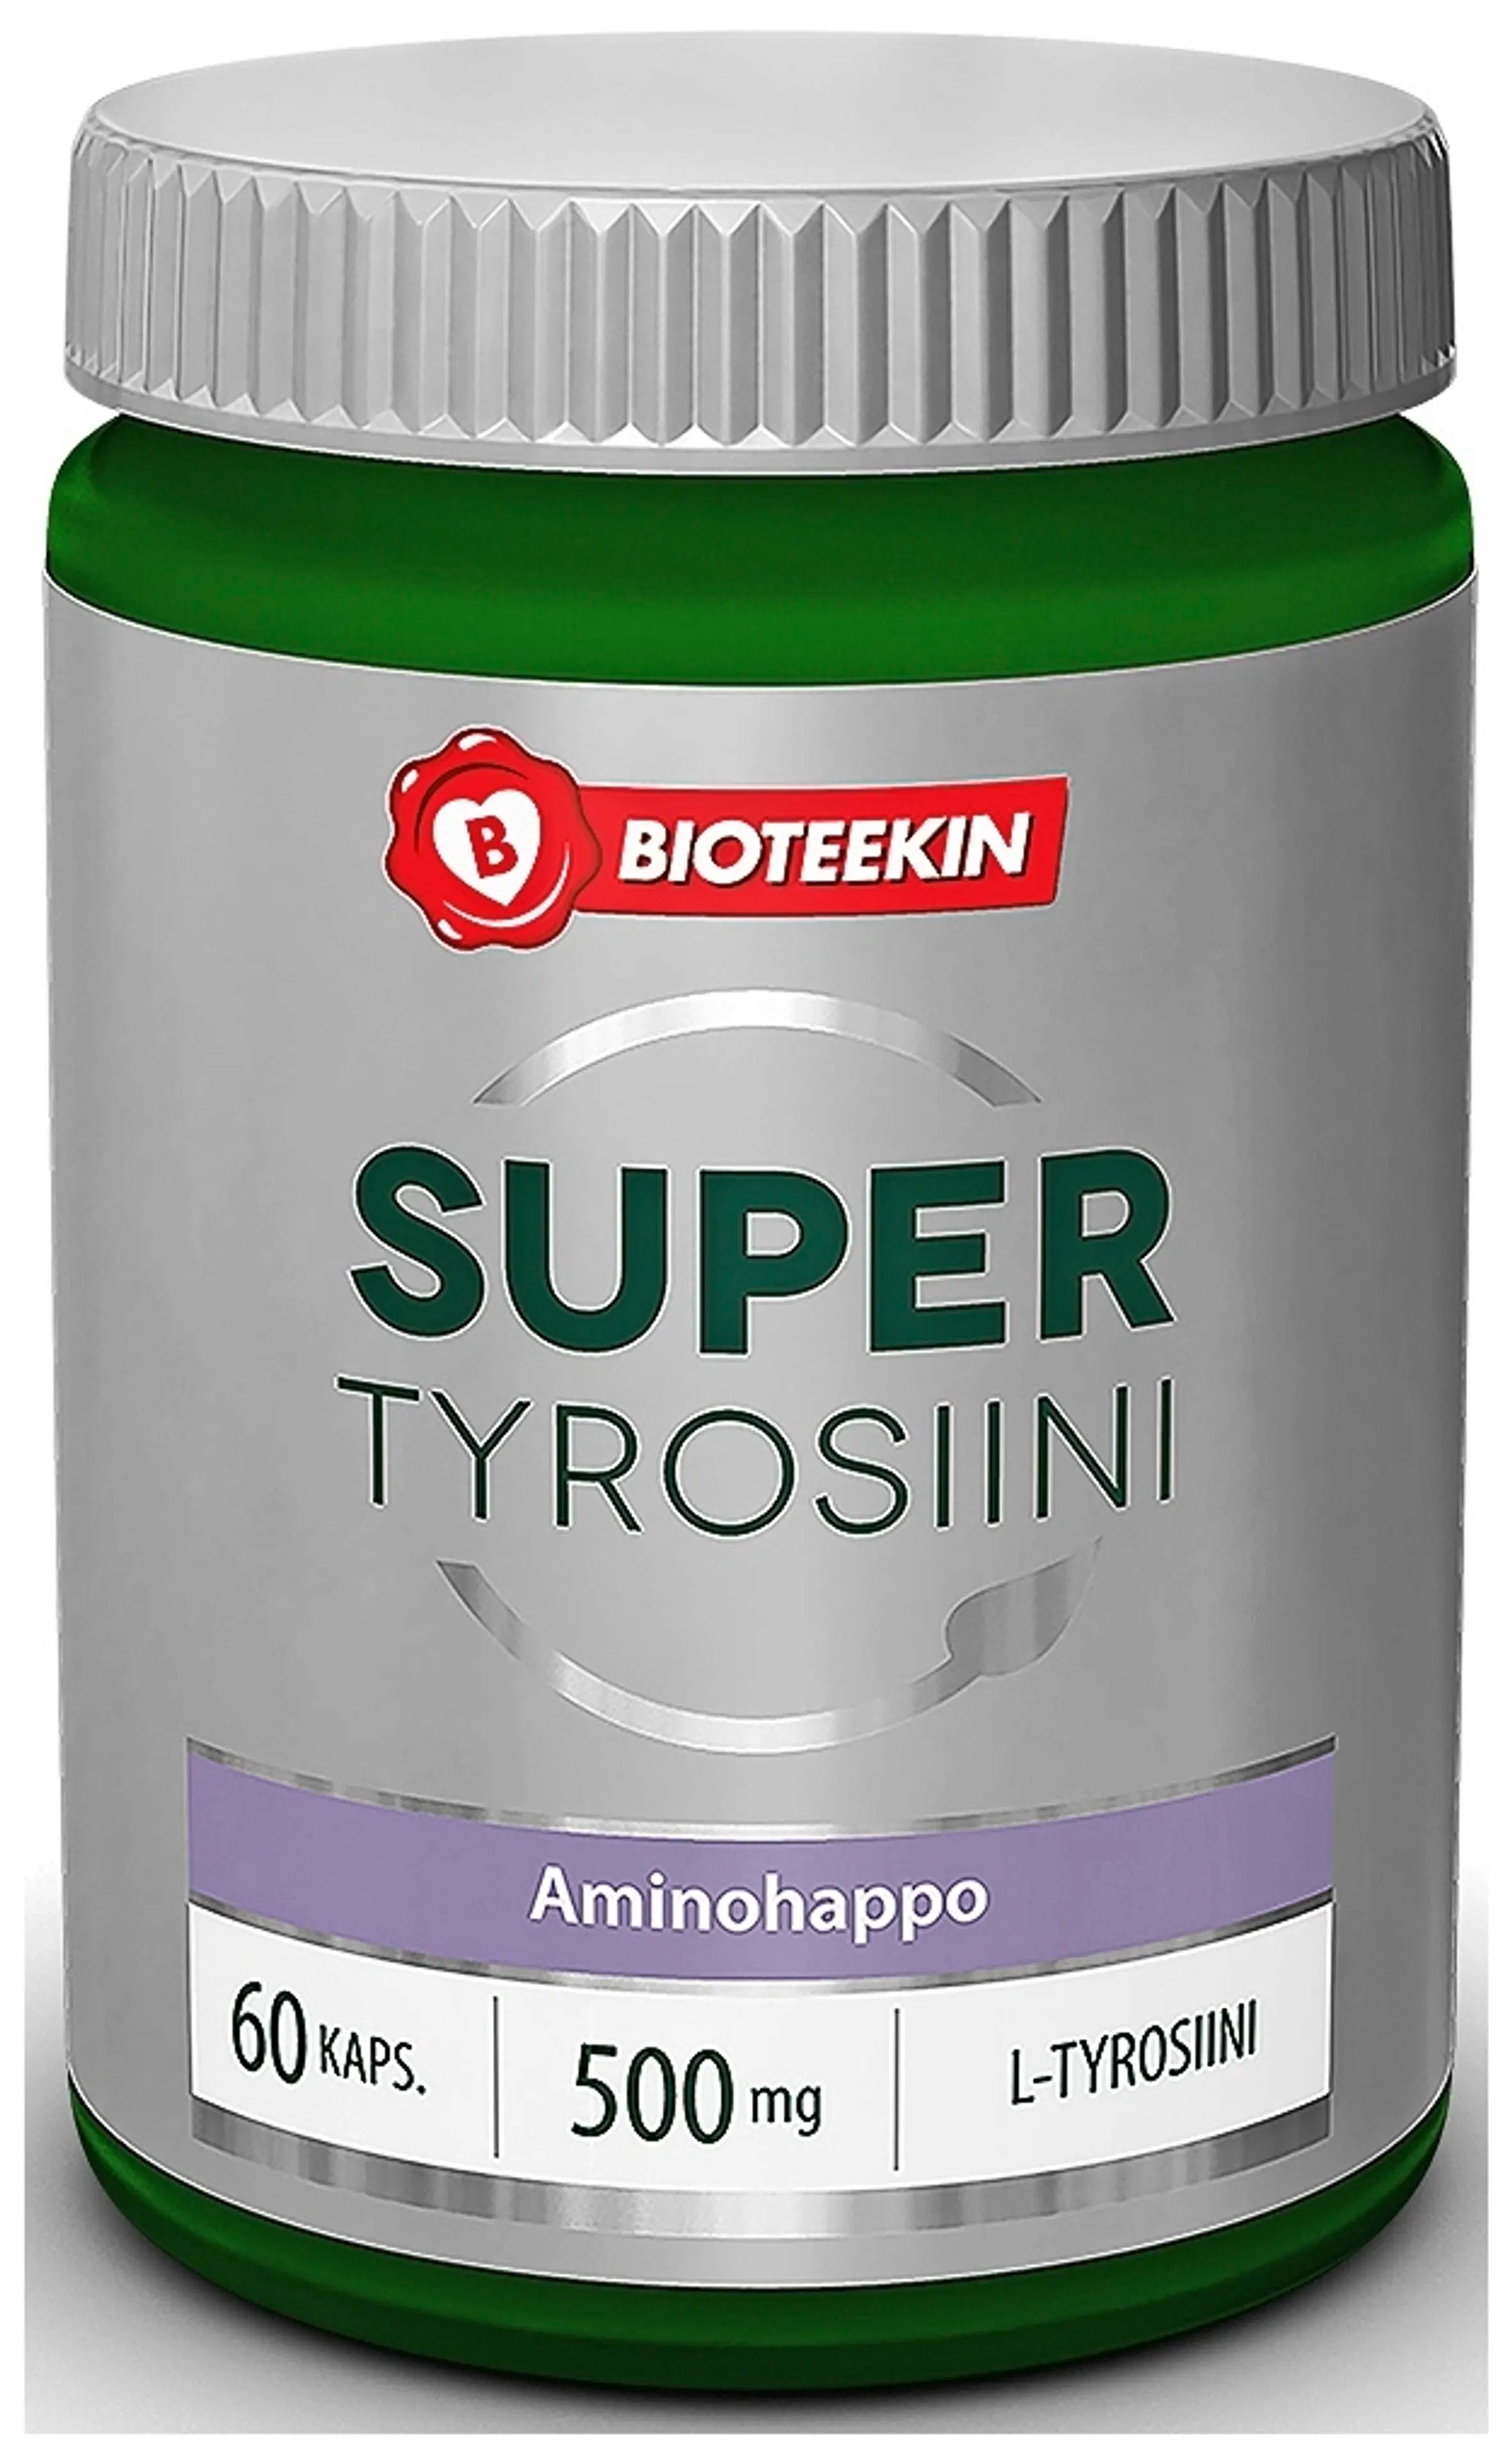 Bioteekin Super Tyrosiini 60 kaps.